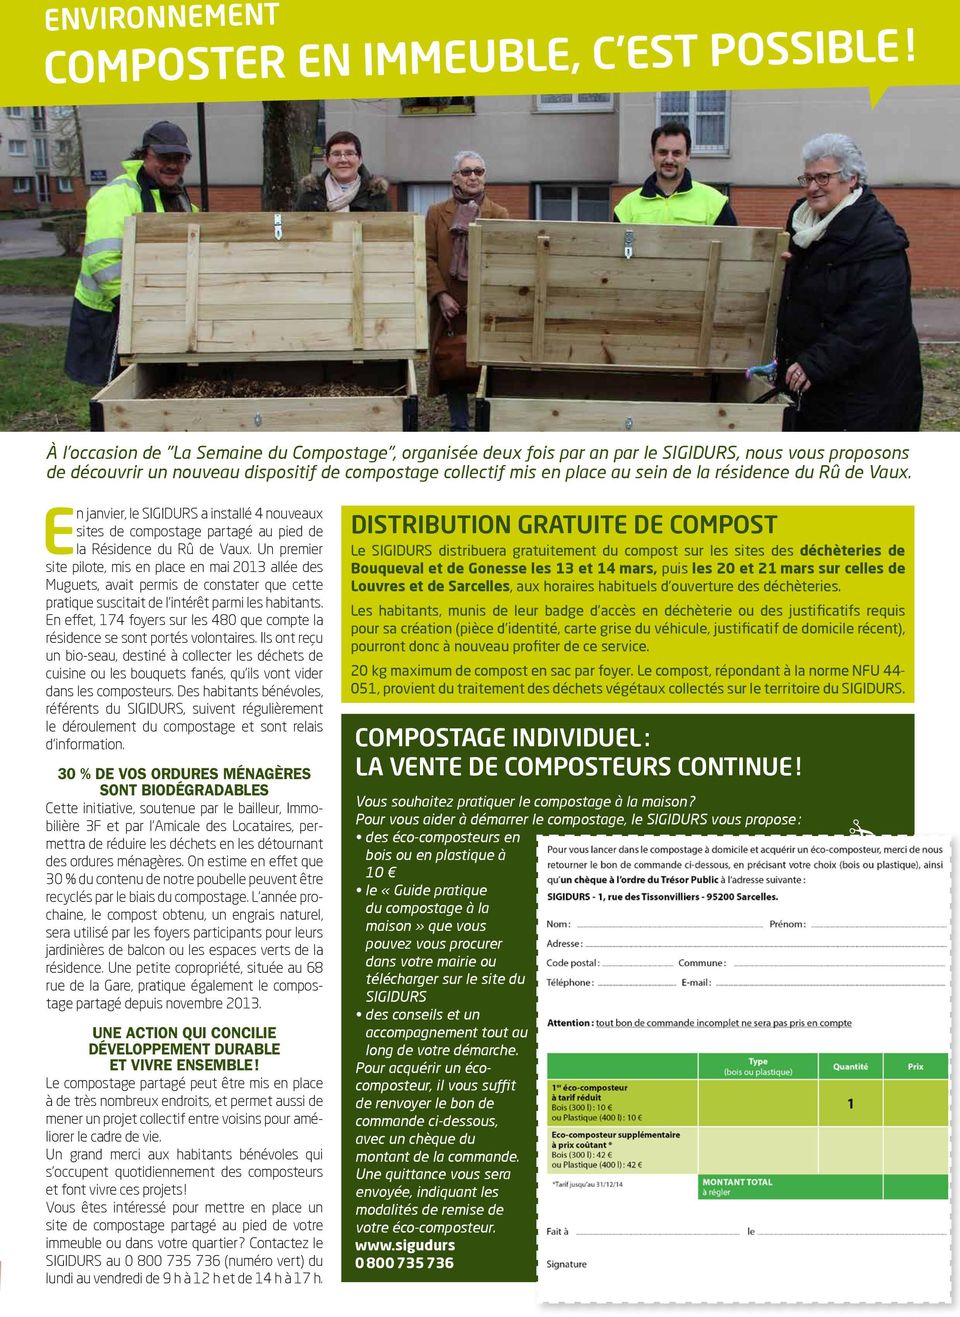 résidence du Rû de Vaux. En janvier, le SIGIDURS a installé 4 nouveaux sites de compostage partagé au pied de la Résidence du Rû de Vaux.